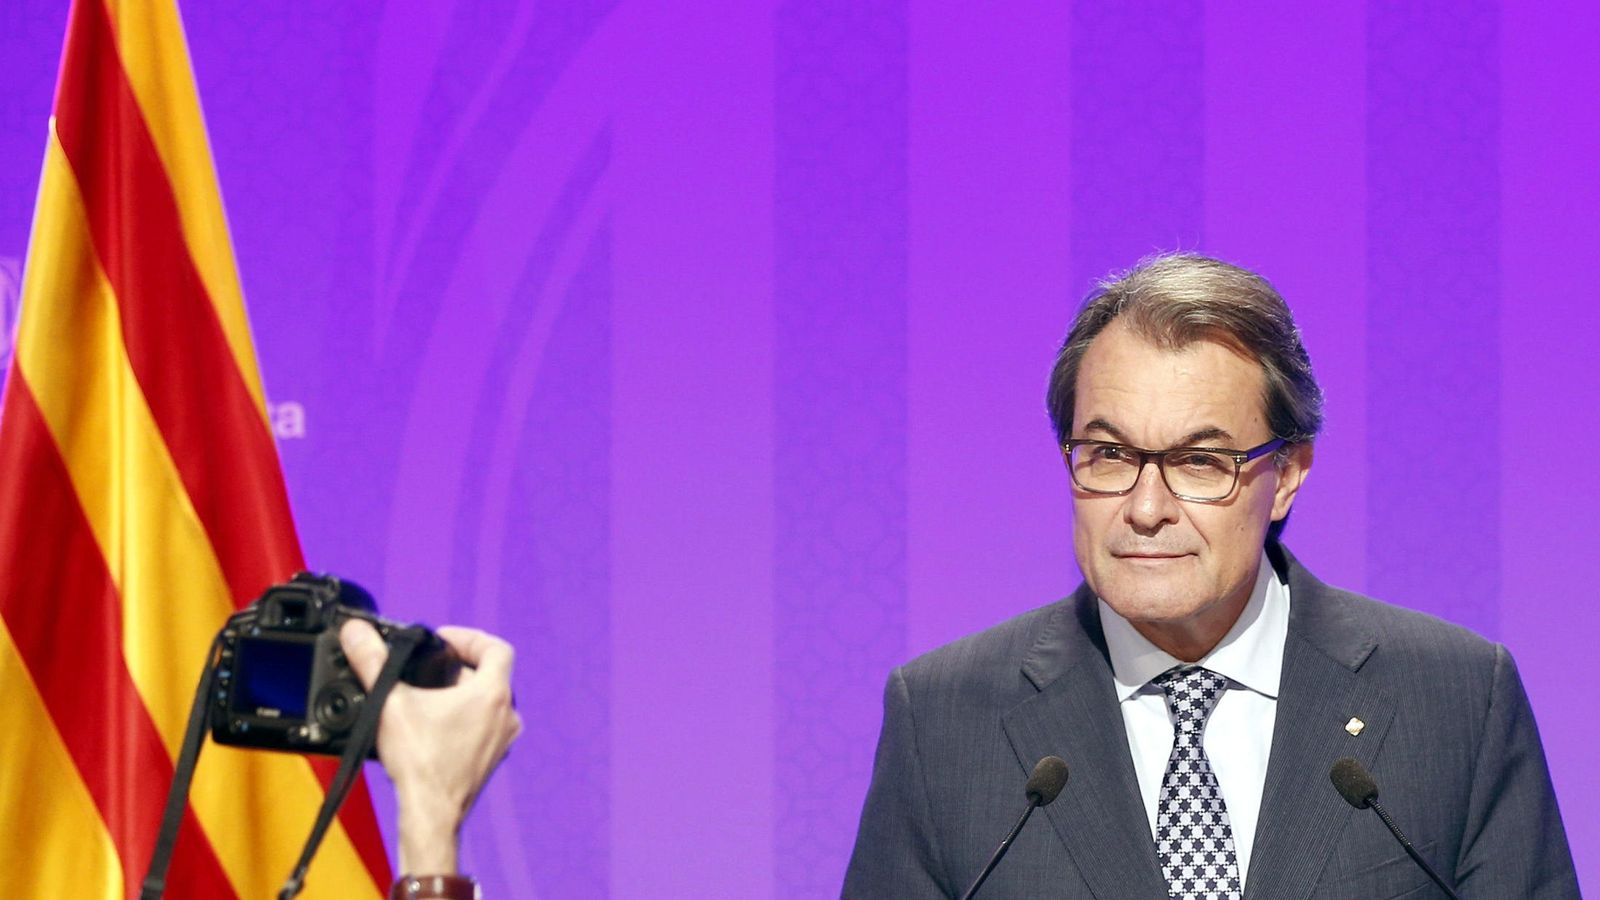 Foto: El presidente de la Generalitat en funciones, Artur Mas, durante una rueda de prensa. (Efe)